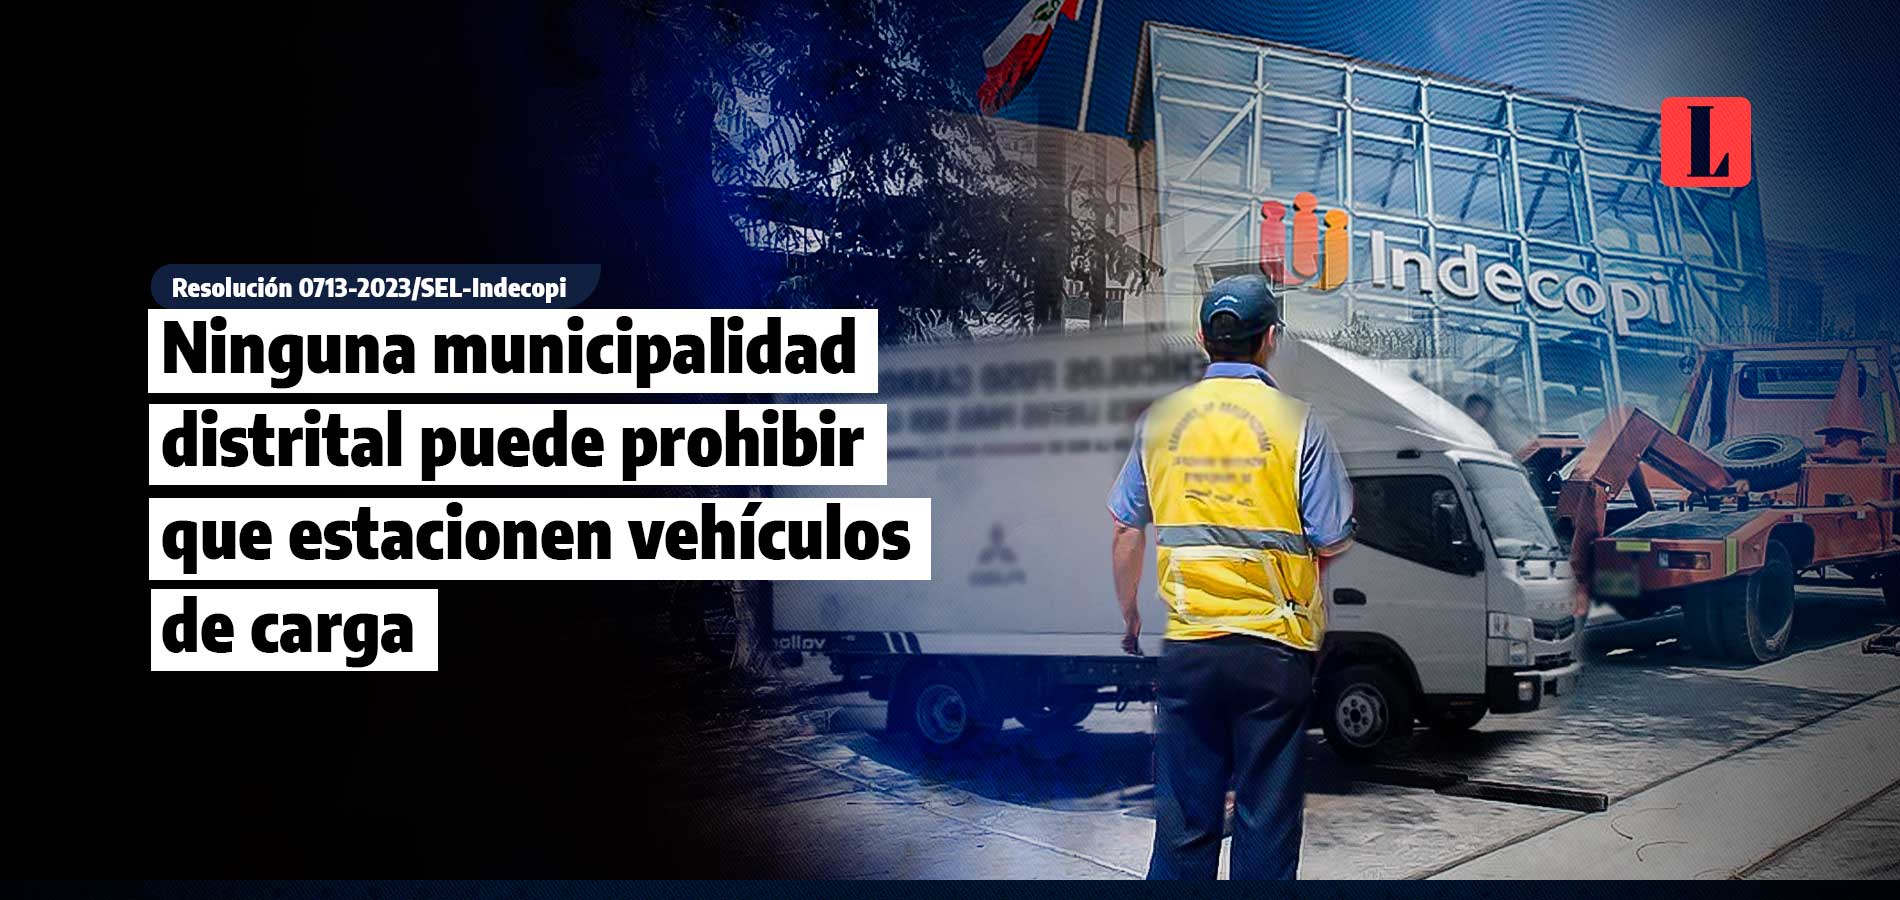 Ninguna municipalidad distrital puede prohibir que estacionen vehículos de carga en su jurisdicción